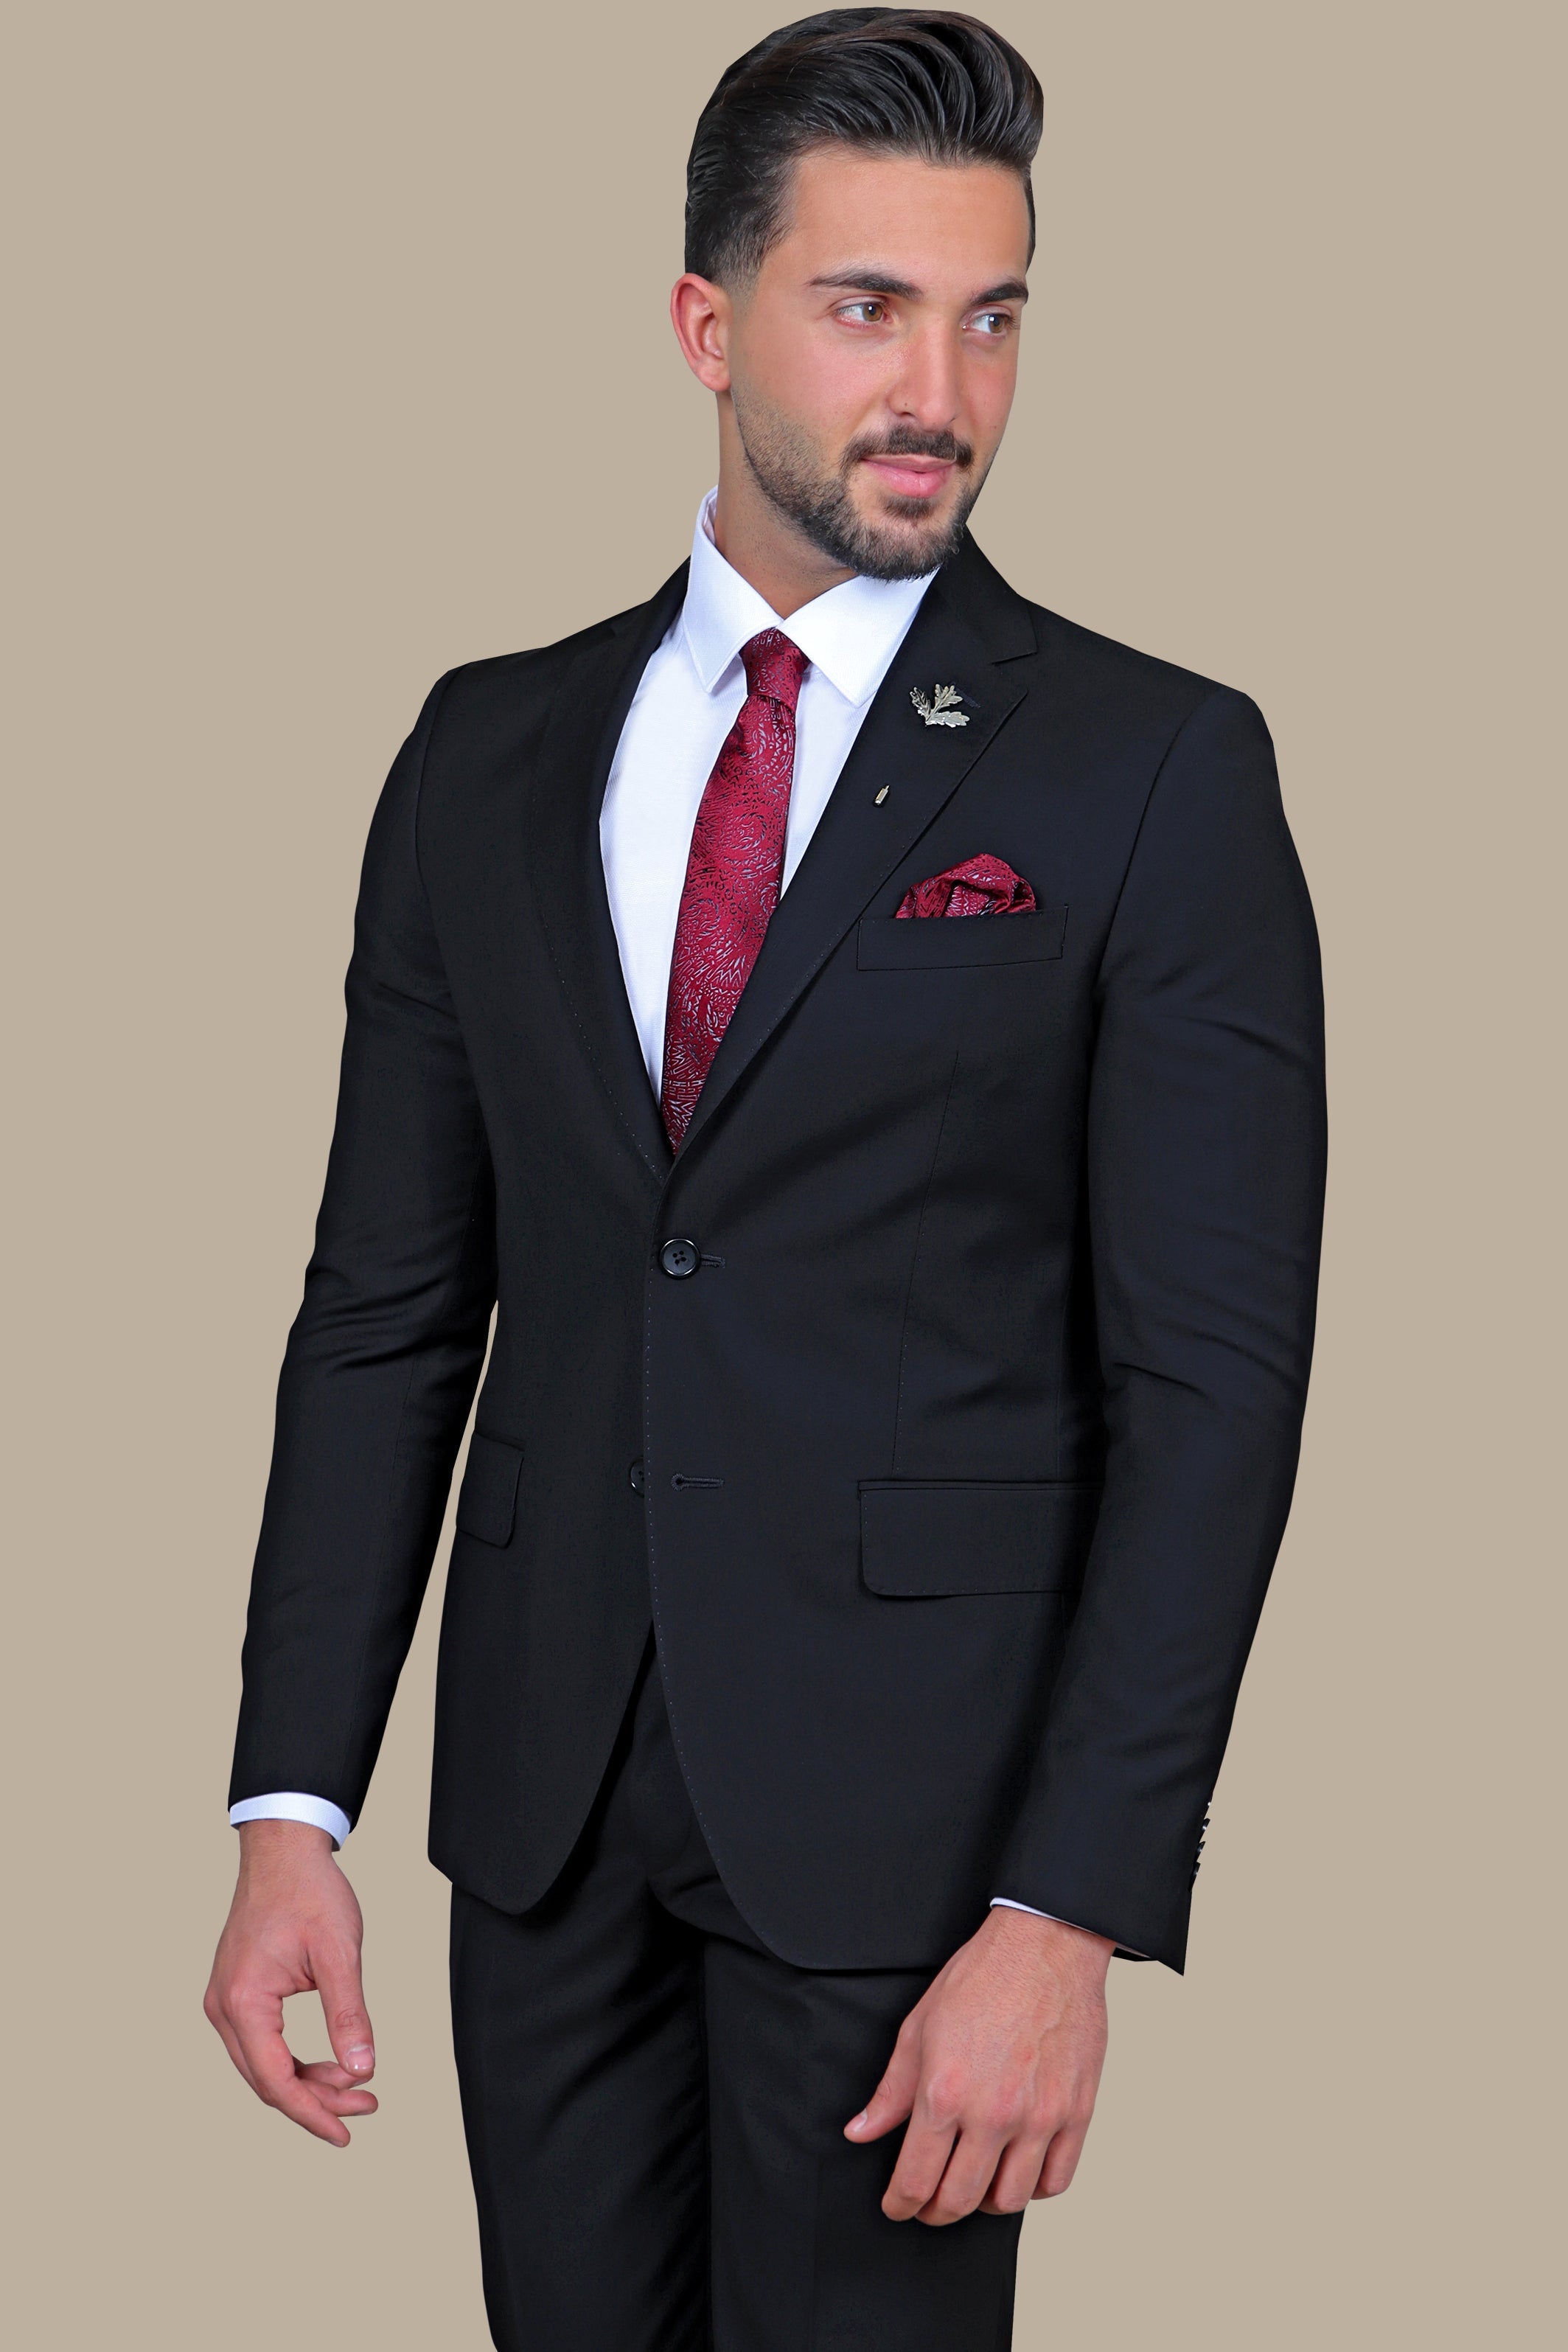 Classic Elegance: The Black Plain Notch Suit